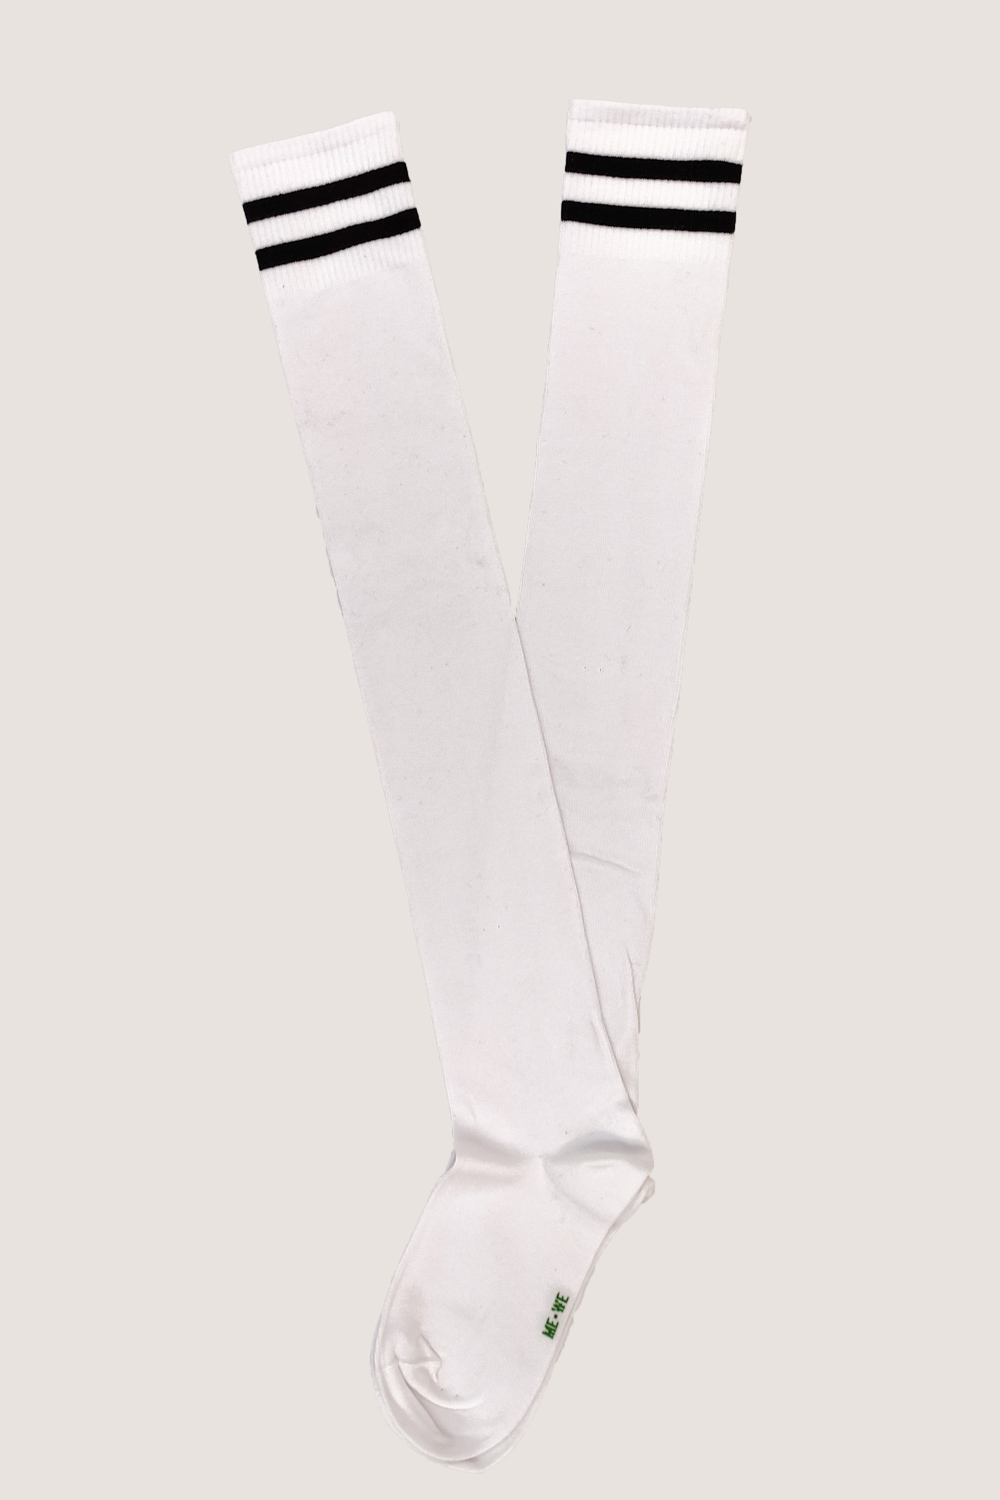 Μακριά βαμβακερή κάλτσα λευκή